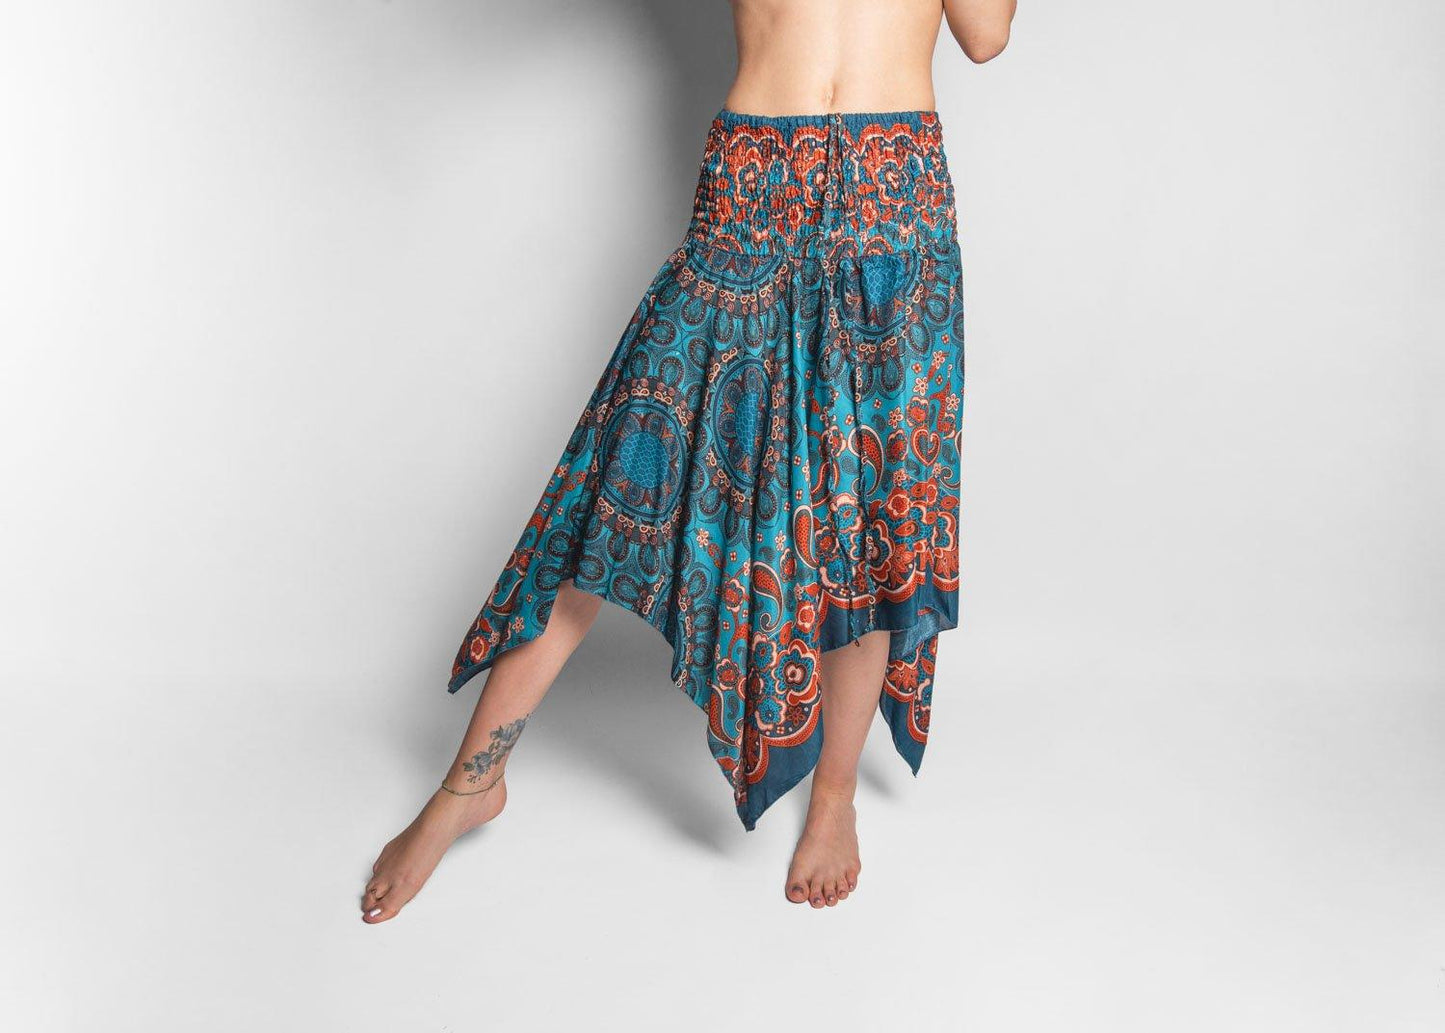 turquoise orange patterned skirt with fringes, summer dress, elf dress, pointed skirt, fringed skirt 